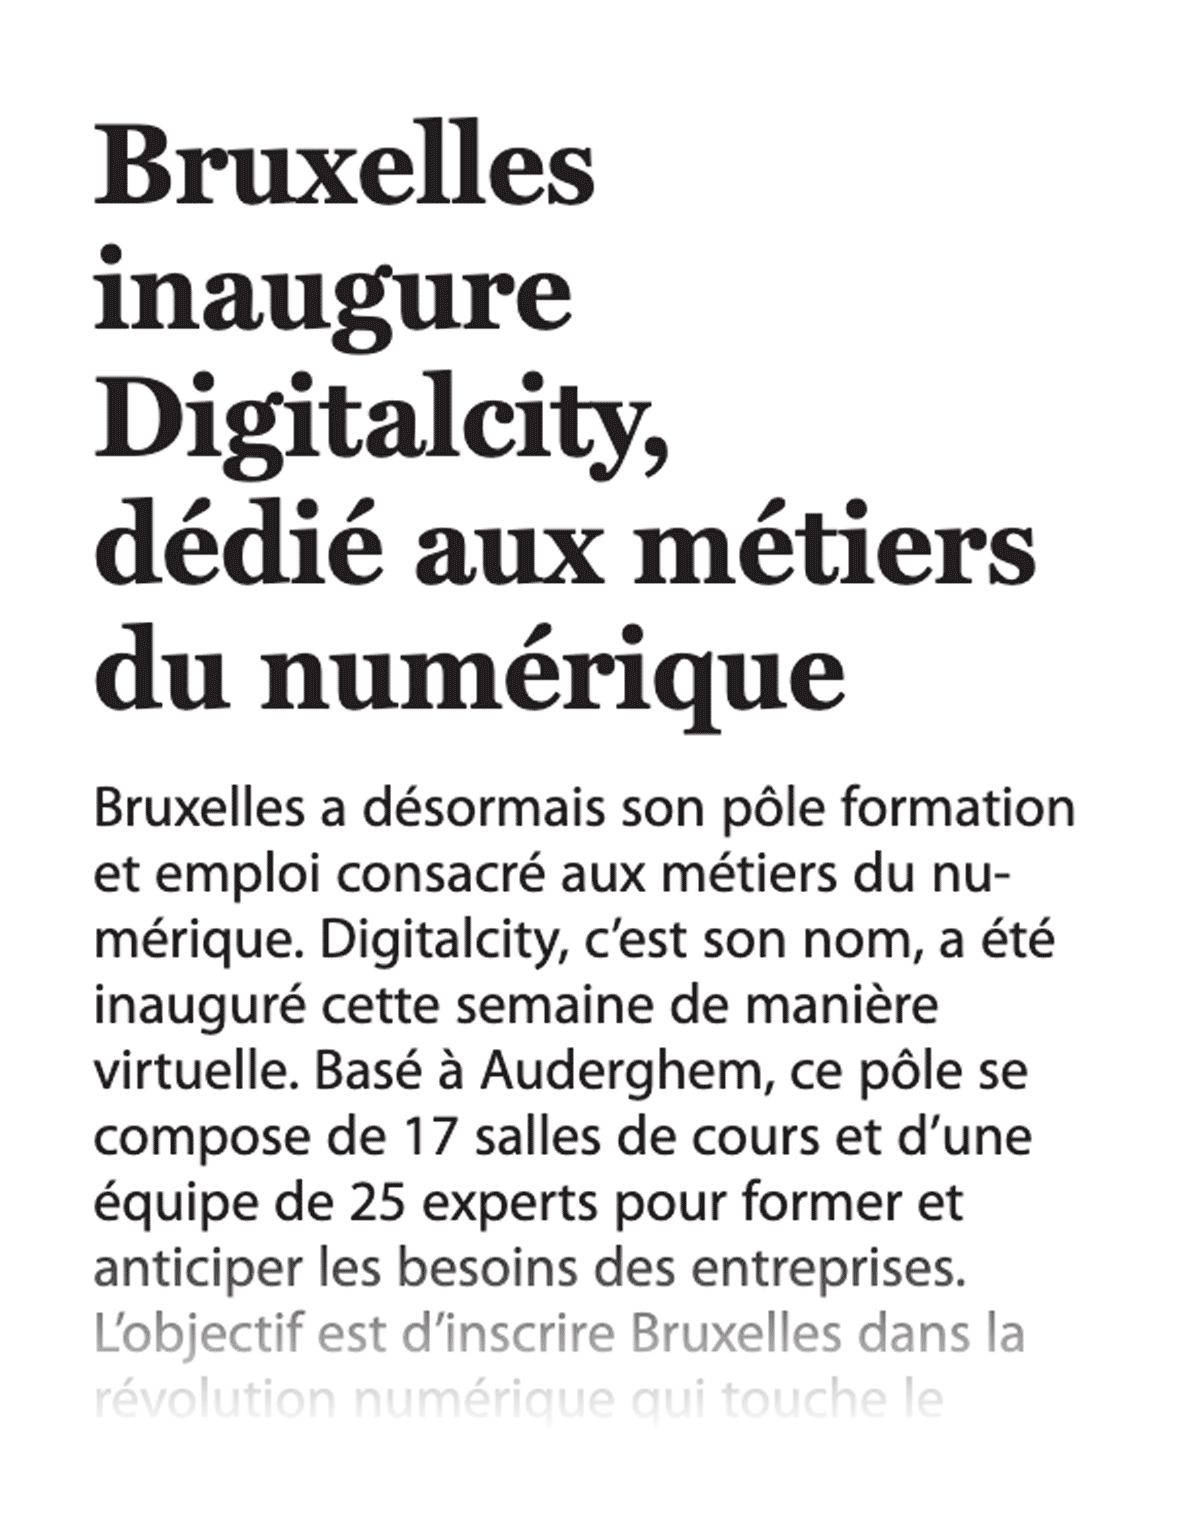 Bruxelles inaugur Digitalcity, dédié aux métiers du numérique